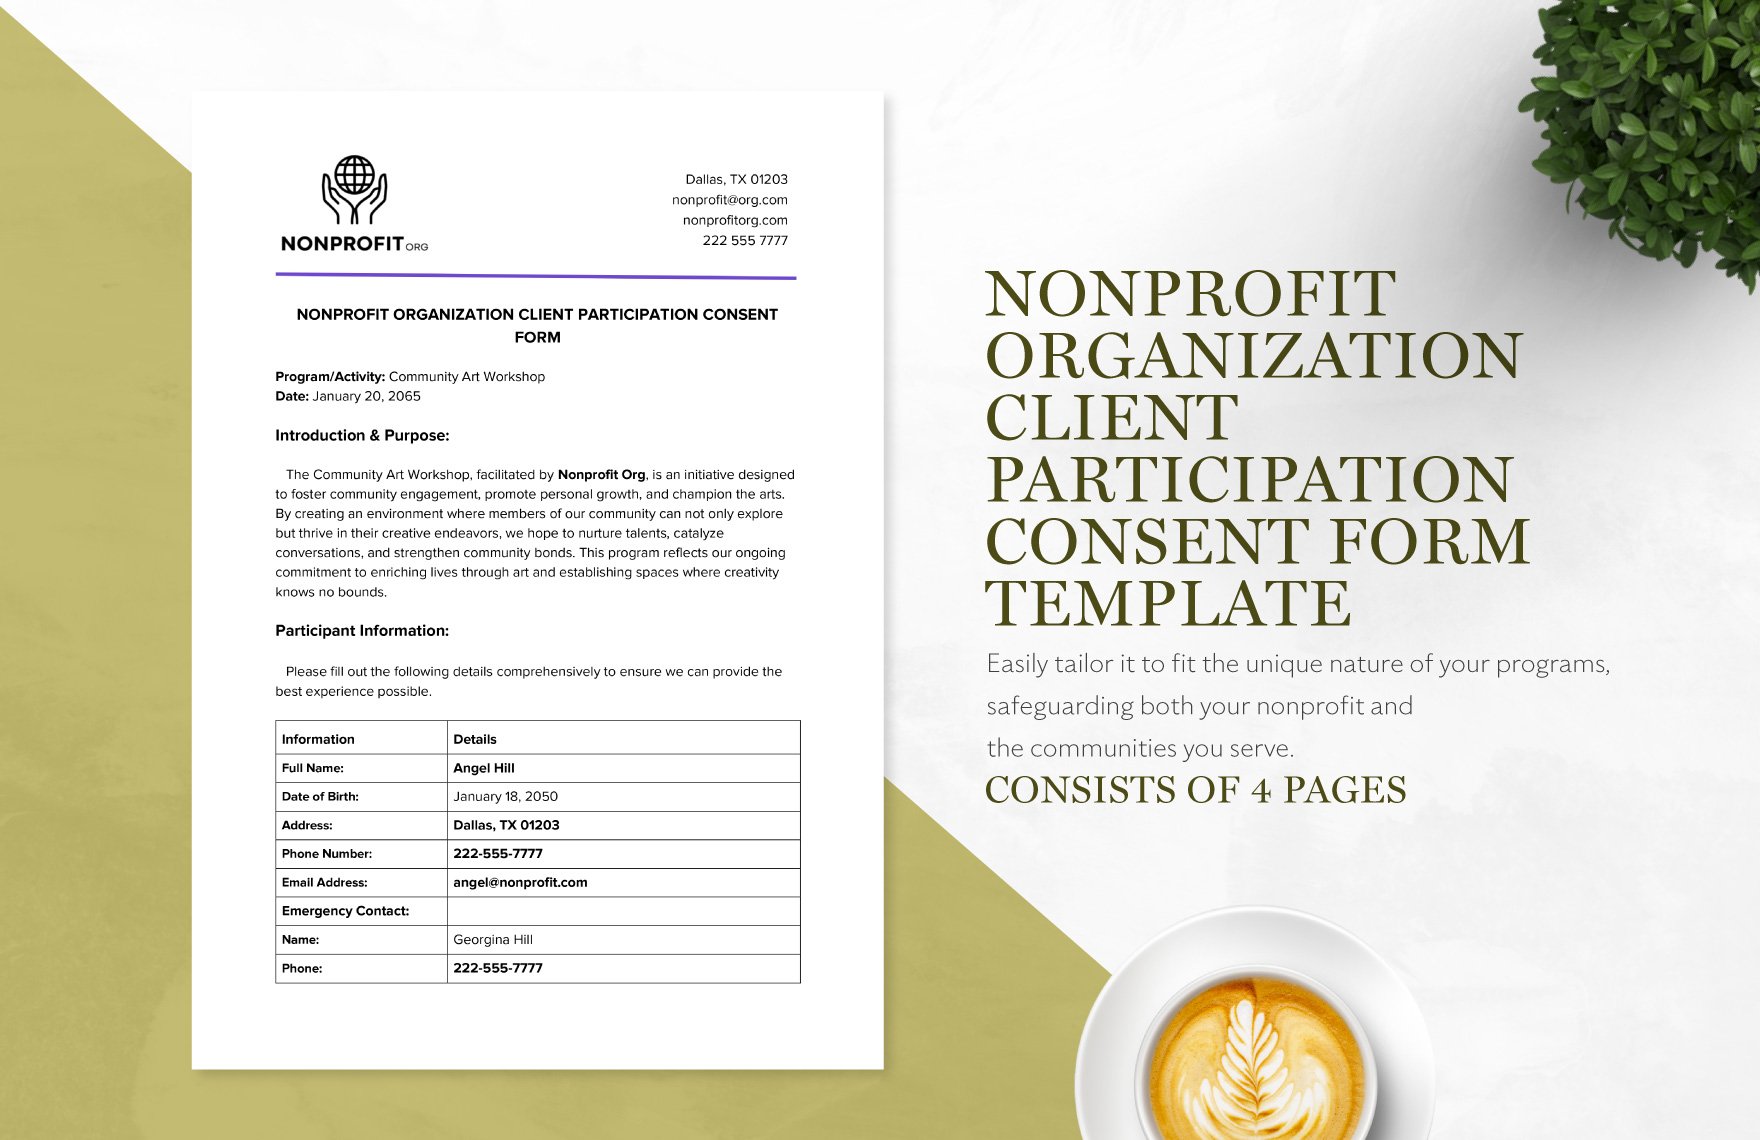 Nonprofit Organization Client Participation Consent Form Template